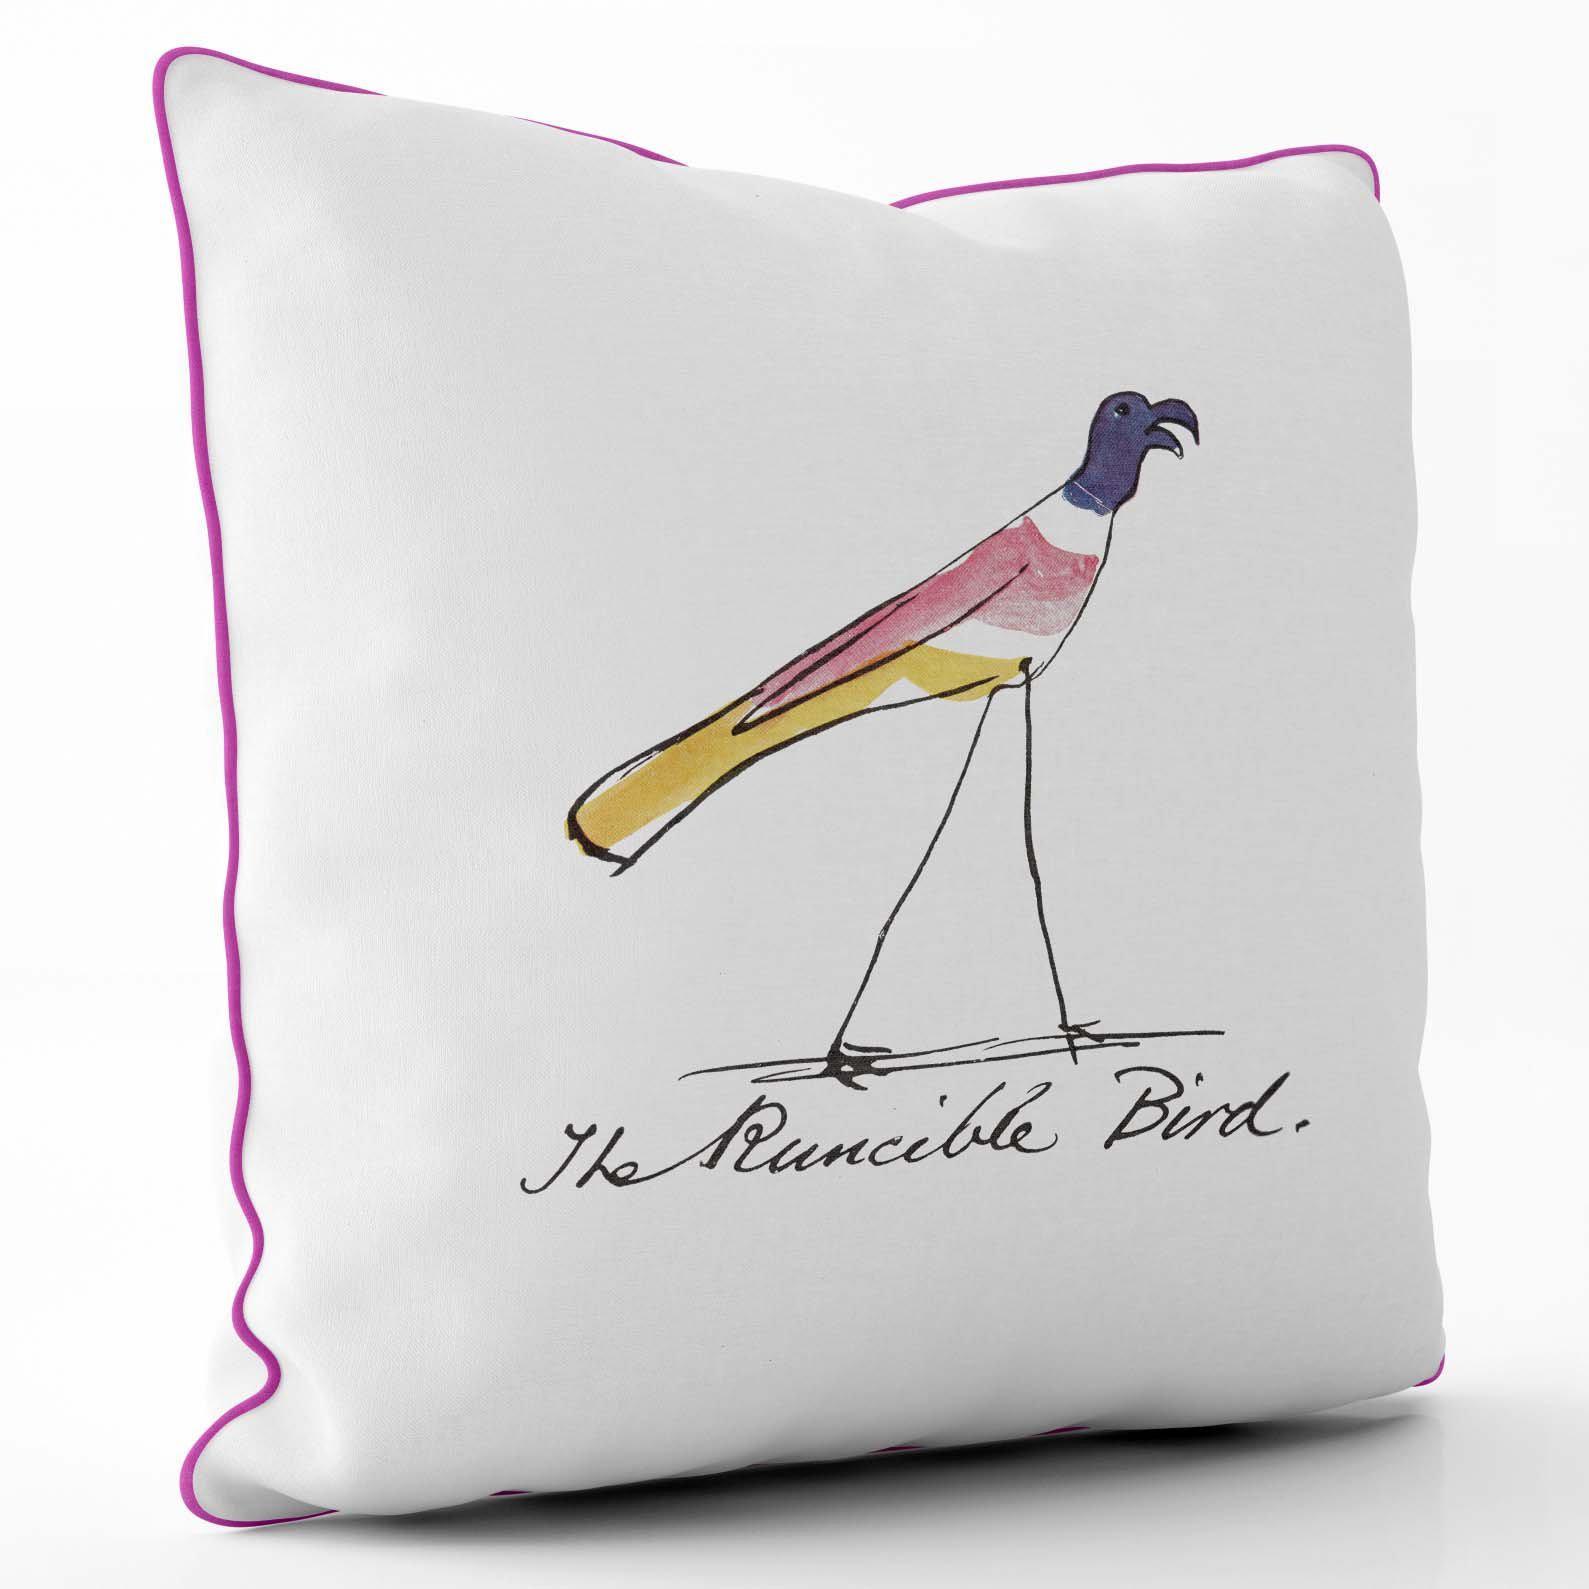 The Runcible Bird - Edward Lear Cushion - Cerise Piping - Handmade Cushions UK - WeLoveCushions